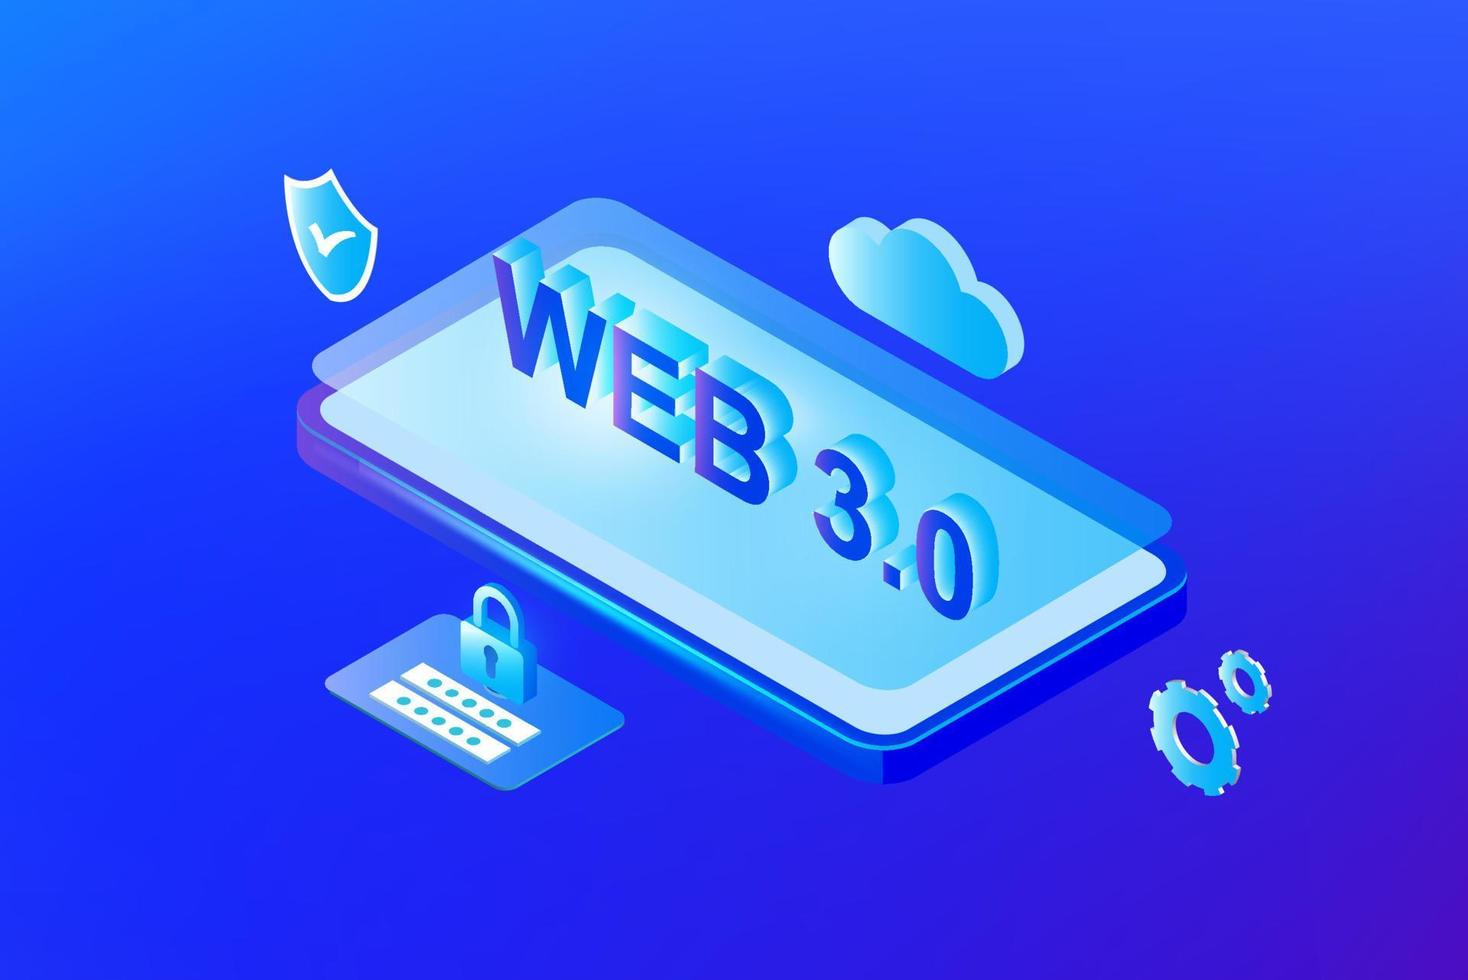 webb 3.0 begrepp, människor använder sig av mobil anteckningsbok med ny version hemsida använder sig av blockchain teknologi, kryptovaluta, och nft konst. vektor illustration